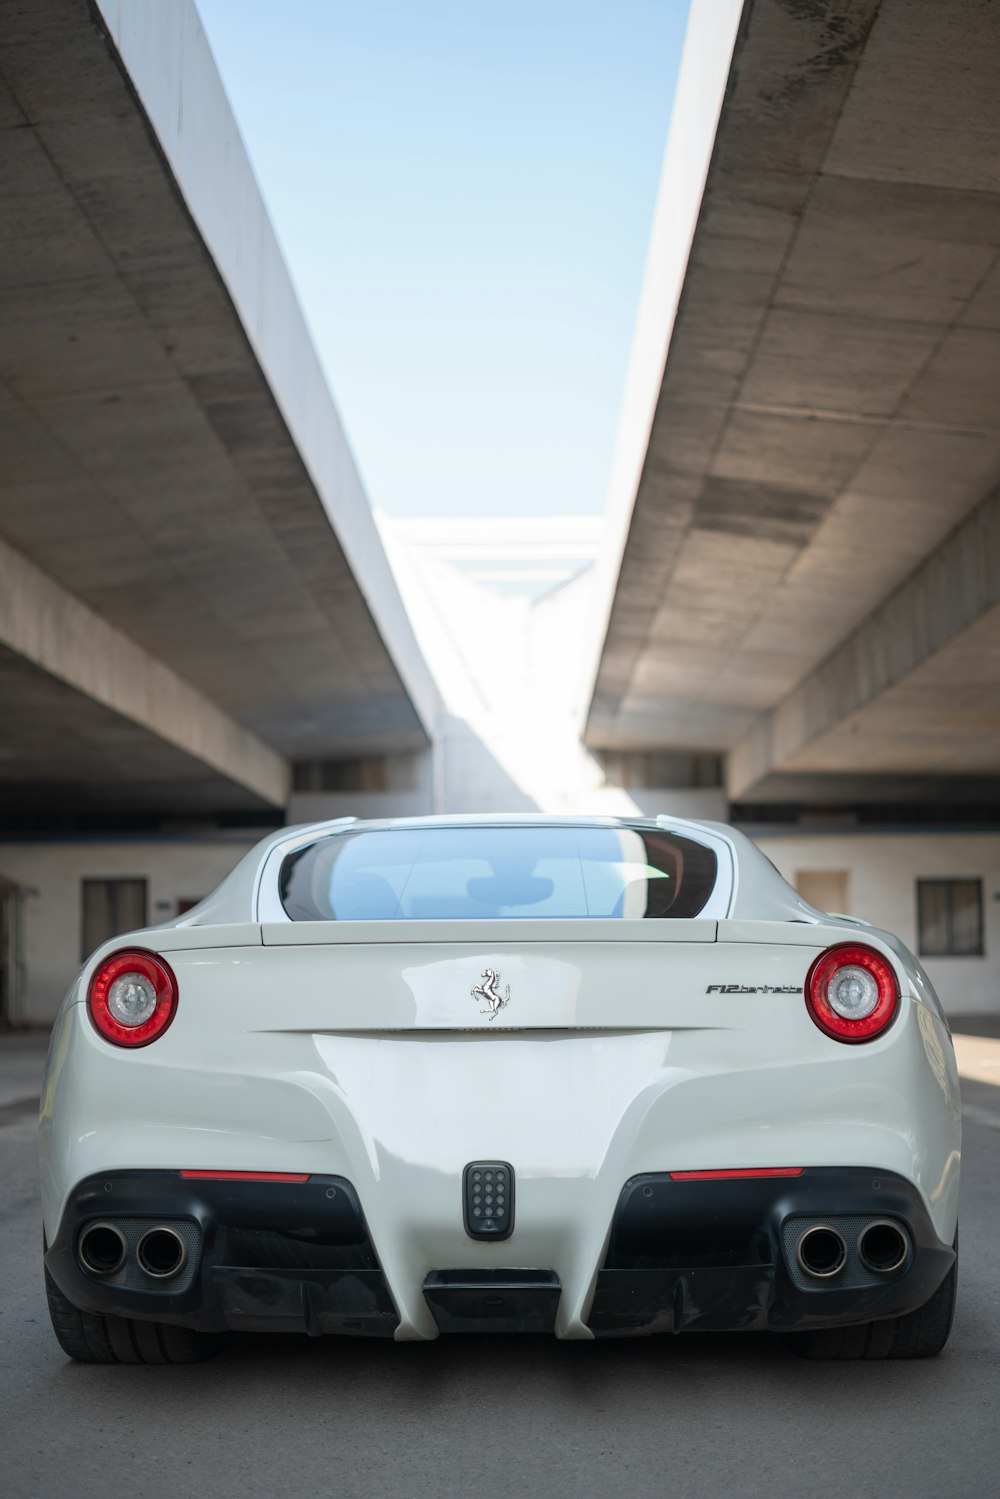 white Ferrari vehicle parked under bridge